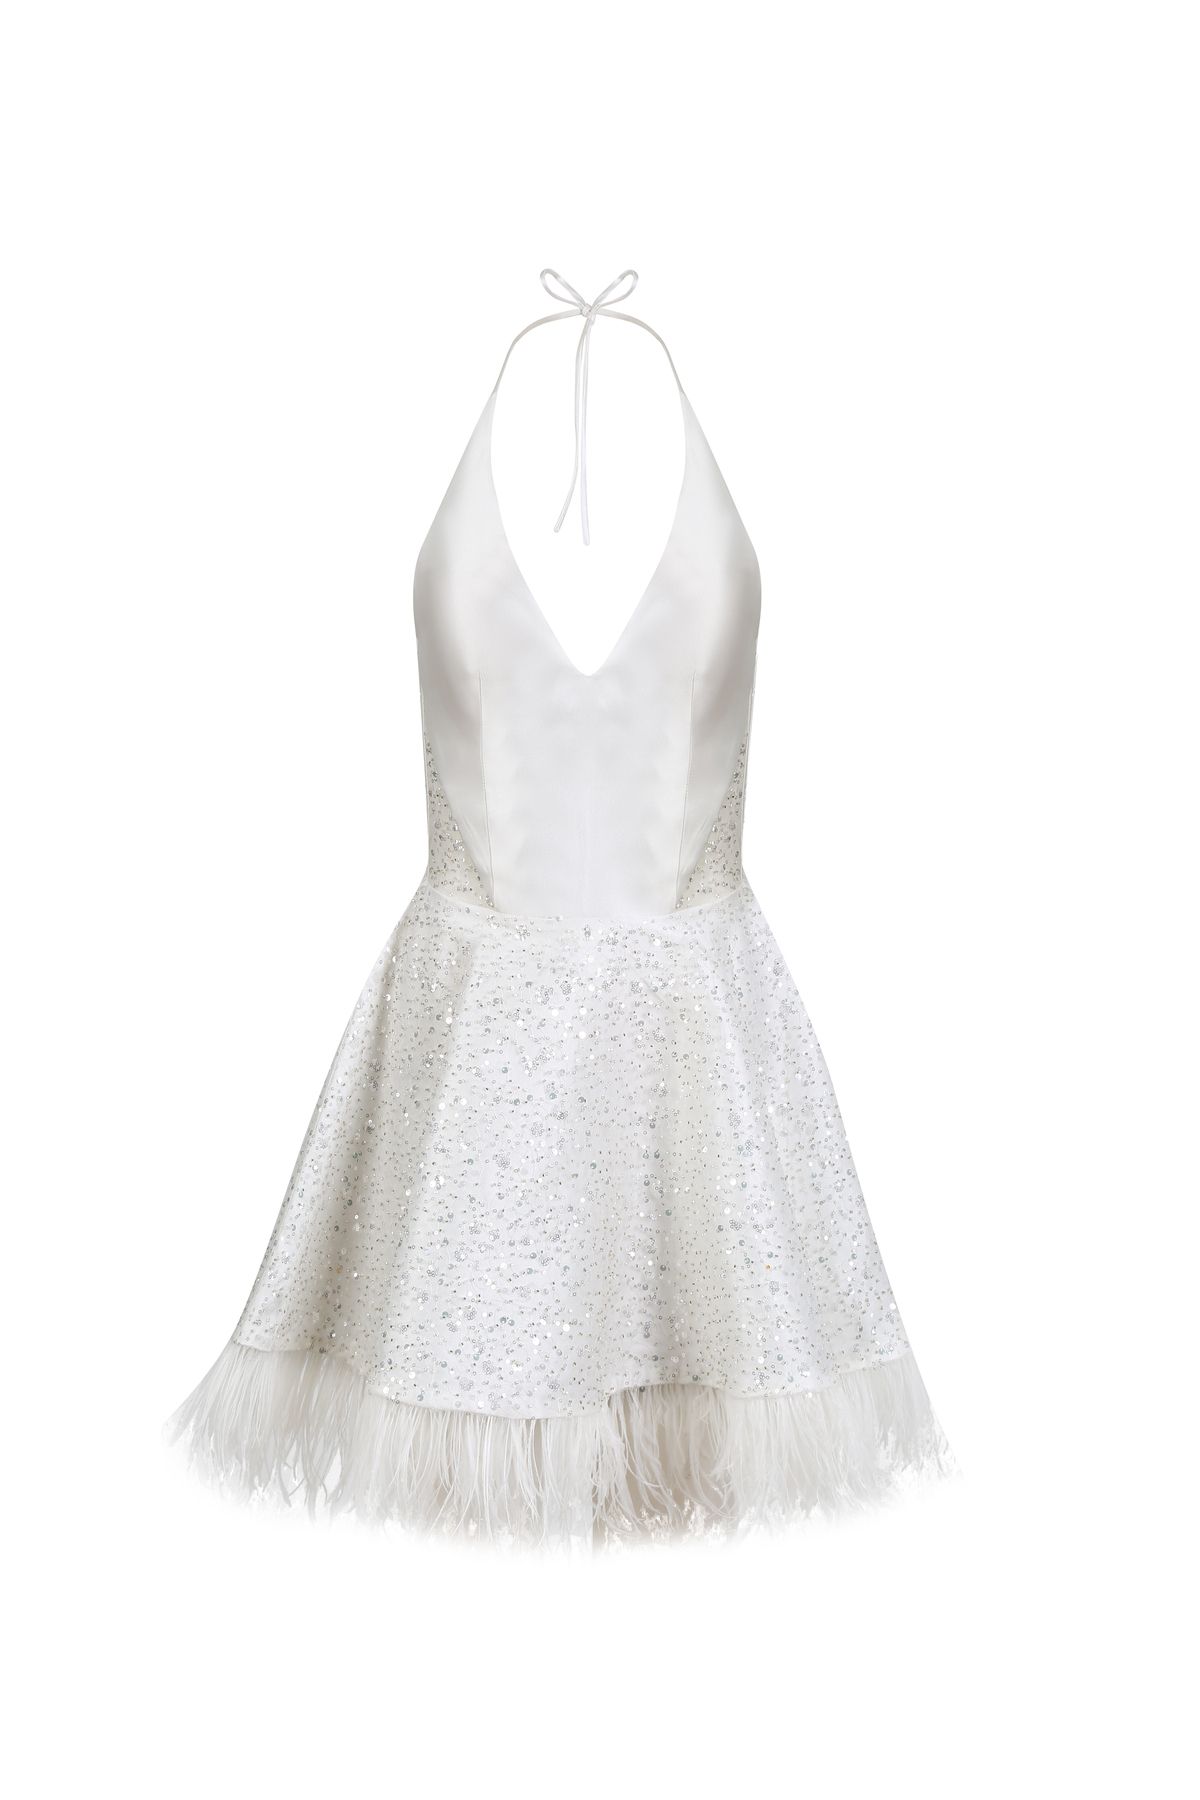 Rheme And Fons Özel Tasarım Couture Boyundan Bağcıklı Glop Balenli Tüylü Mini Beyaz Ev Çıkış Gelinliği Abiye Elbise